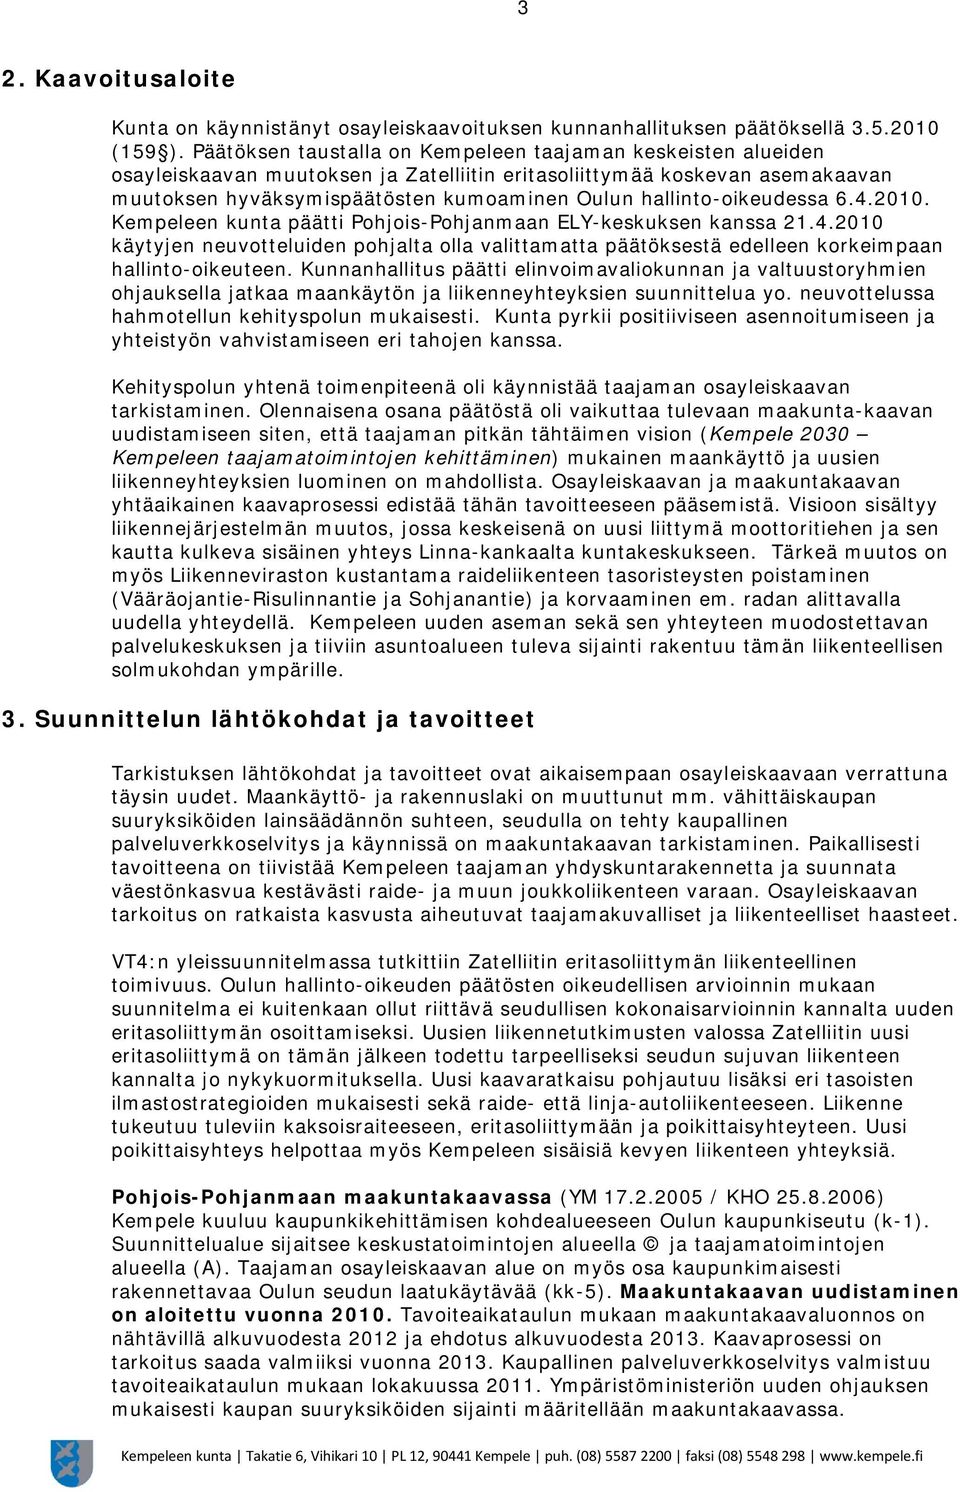 hallinto-oikeudessa 6.4.2010. Kempeleen kunta päätti Pohjois-Pohjanmaan ELY-keskuksen kanssa 21.4.2010 käytyjen neuvotteluiden pohjalta olla valittamatta päätöksestä edelleen korkeimpaan hallinto-oikeuteen.